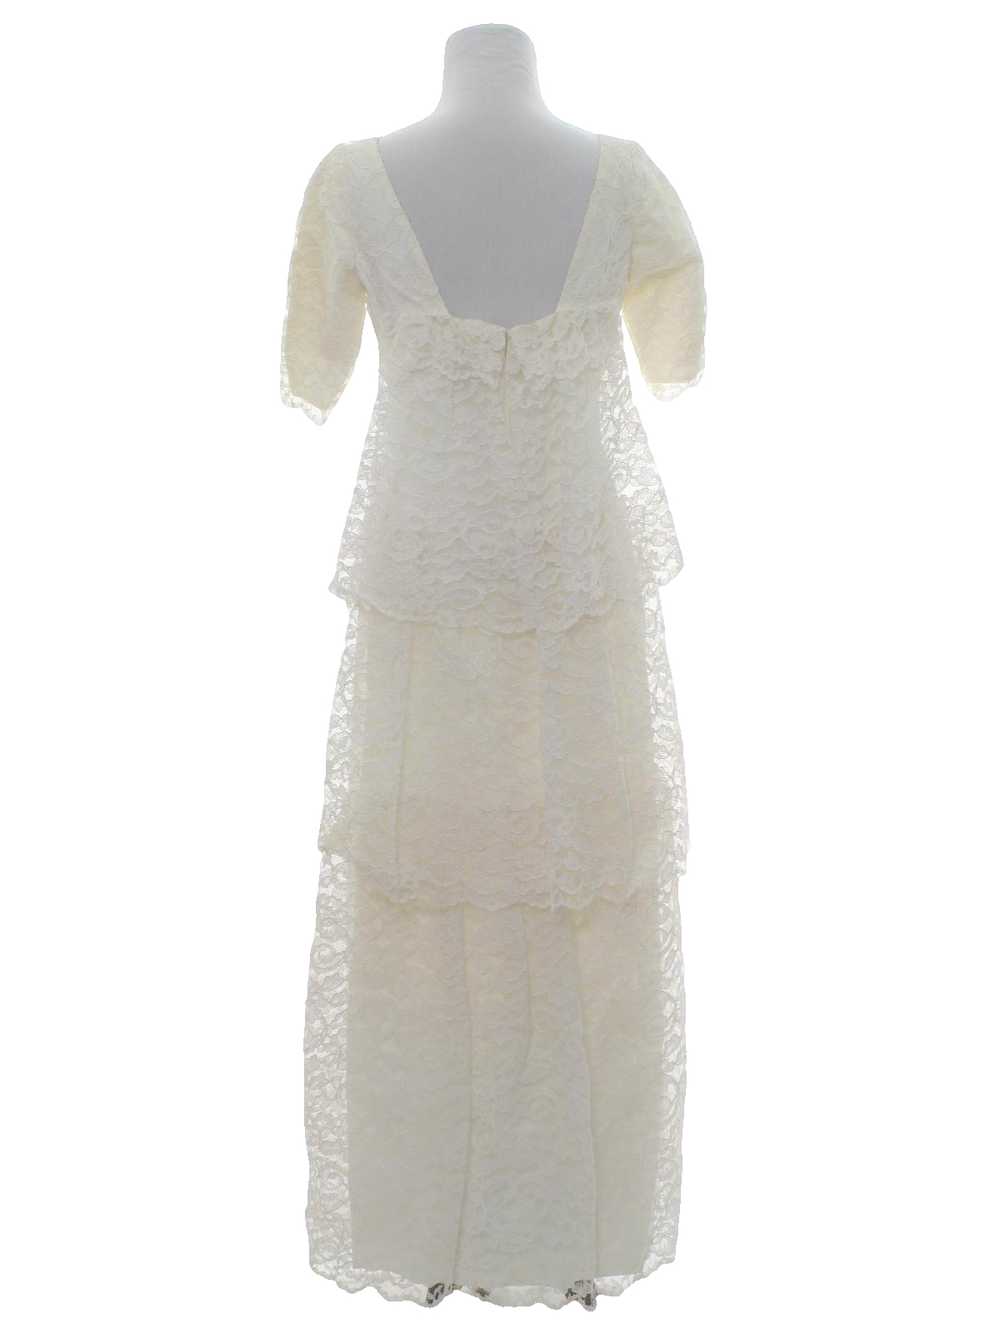 1970's White Wedding Dress - image 3